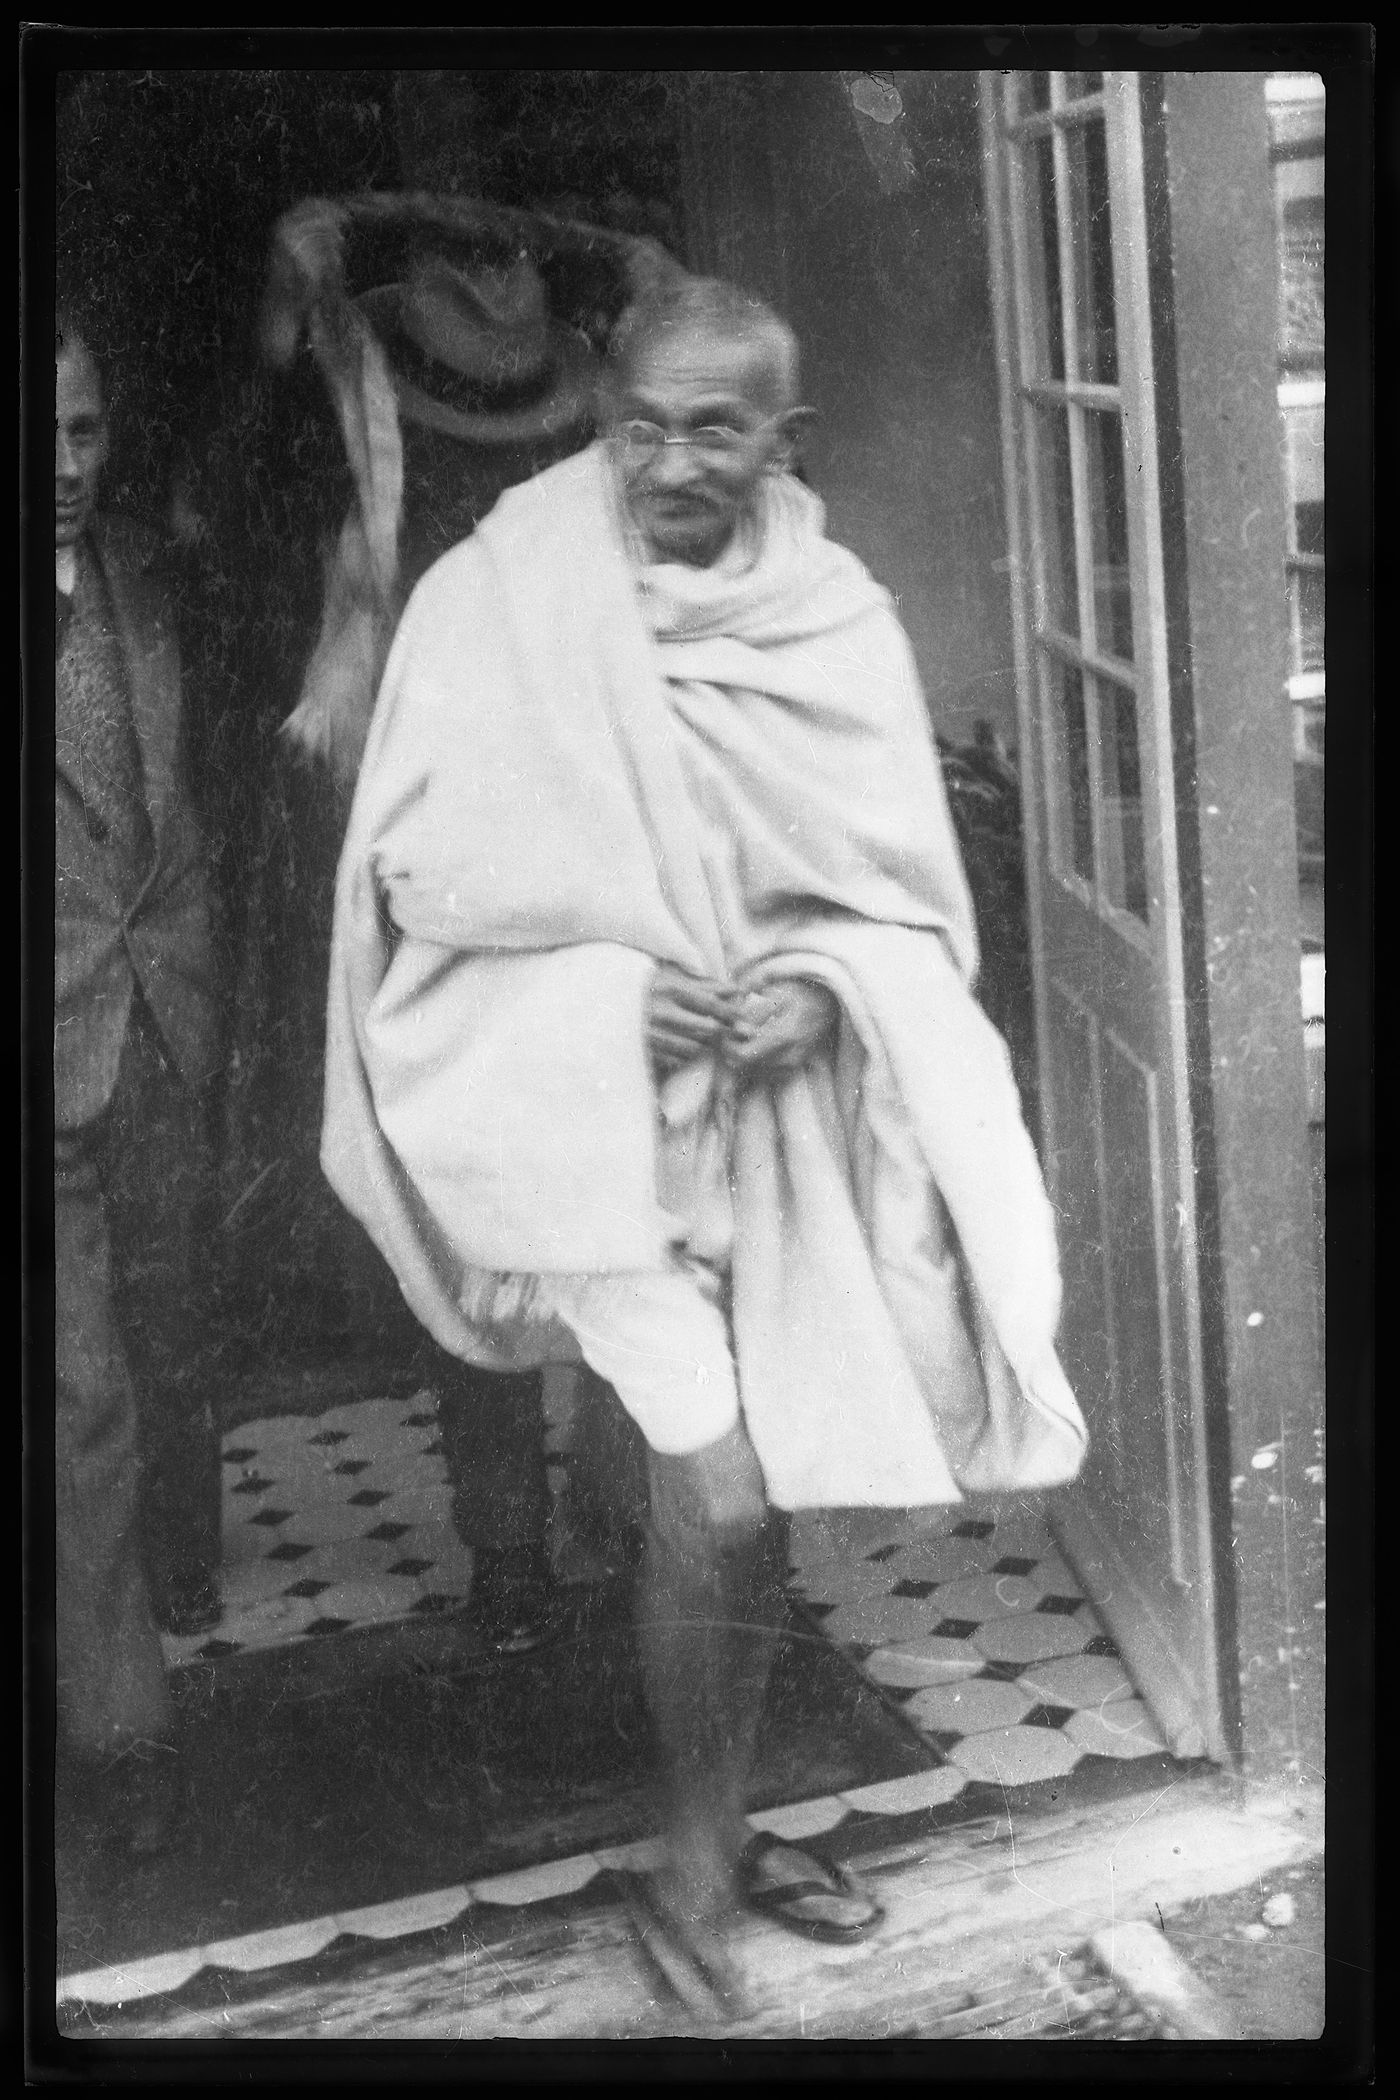 Gandhi during a visit in Switzerland